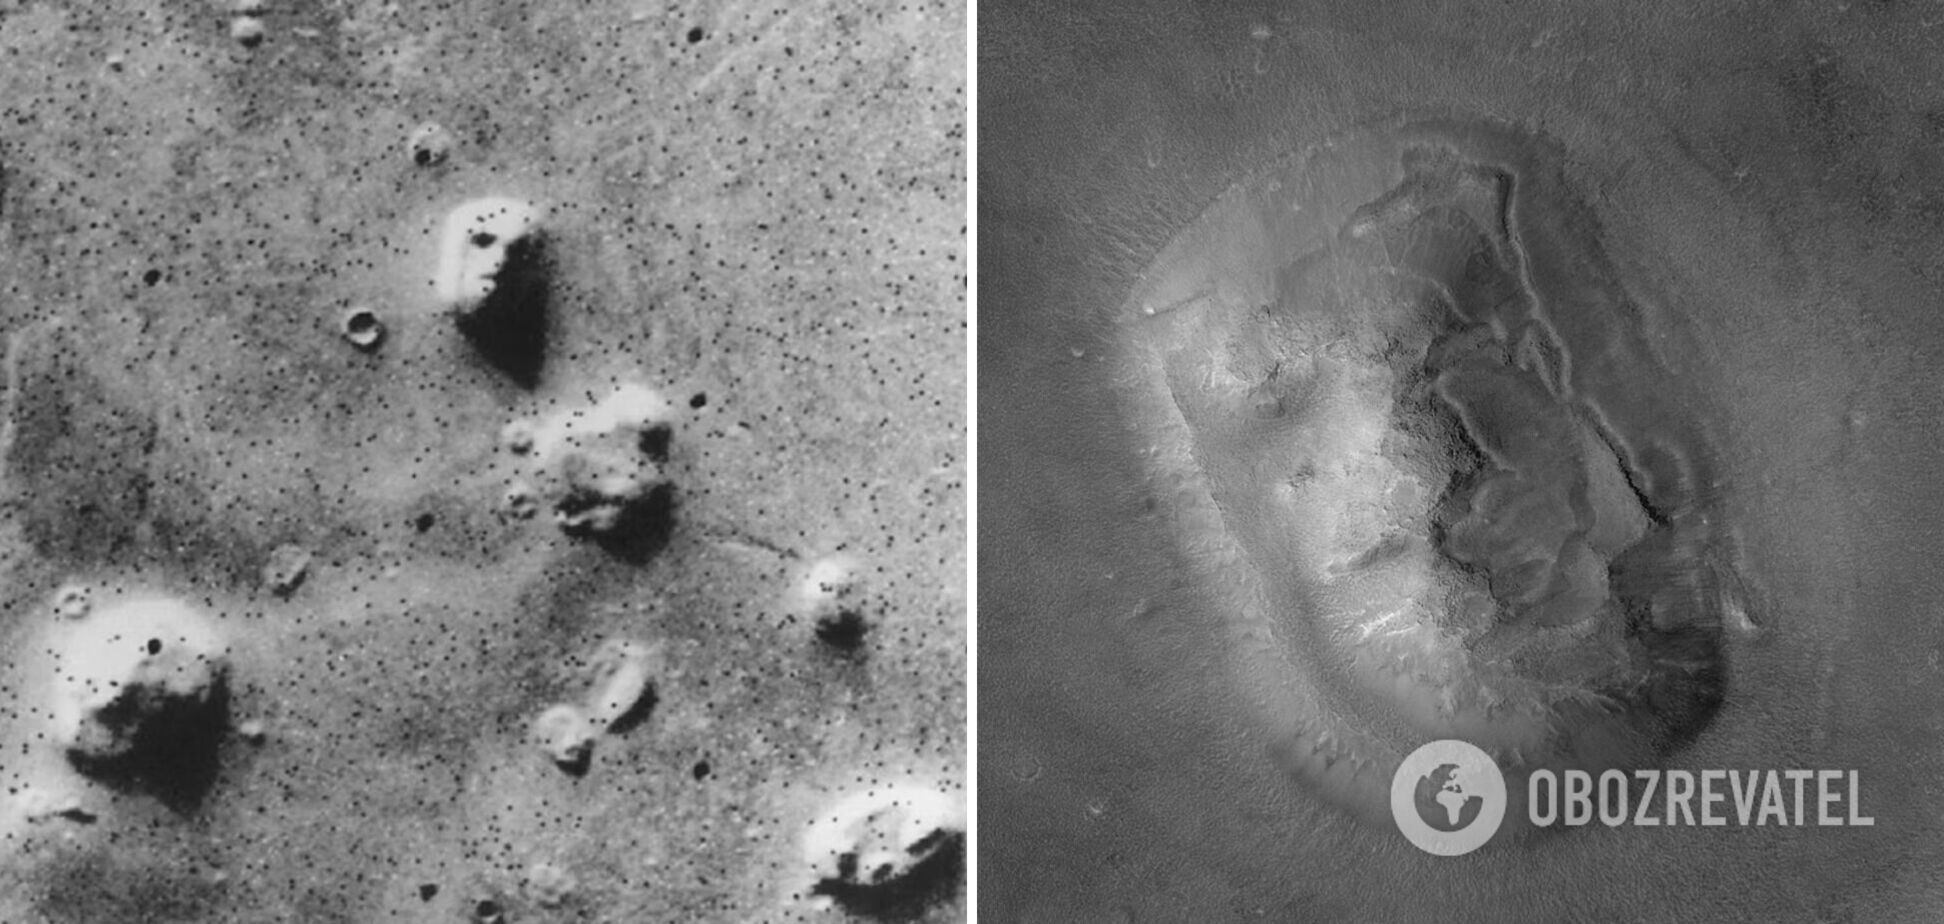 Лицо на Марсе запустило теорию заговора, но научное объяснение не сделало его менее странным: история загадочного фото